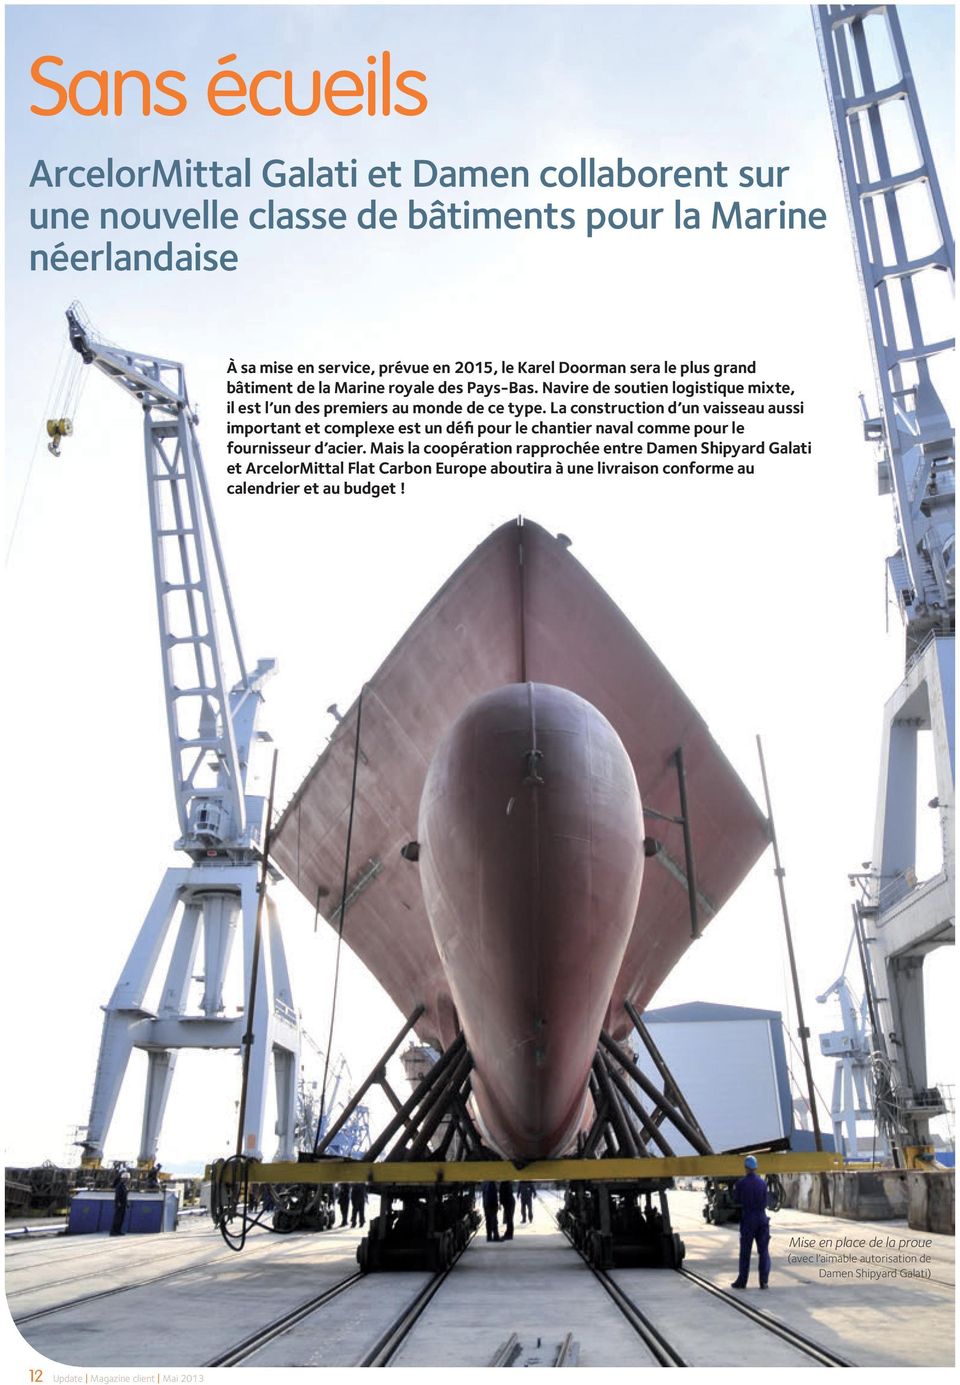 La construction d un vaisseau aussi important et complexe est un défi pour le chantier naval comme pour le fournisseur d acier.